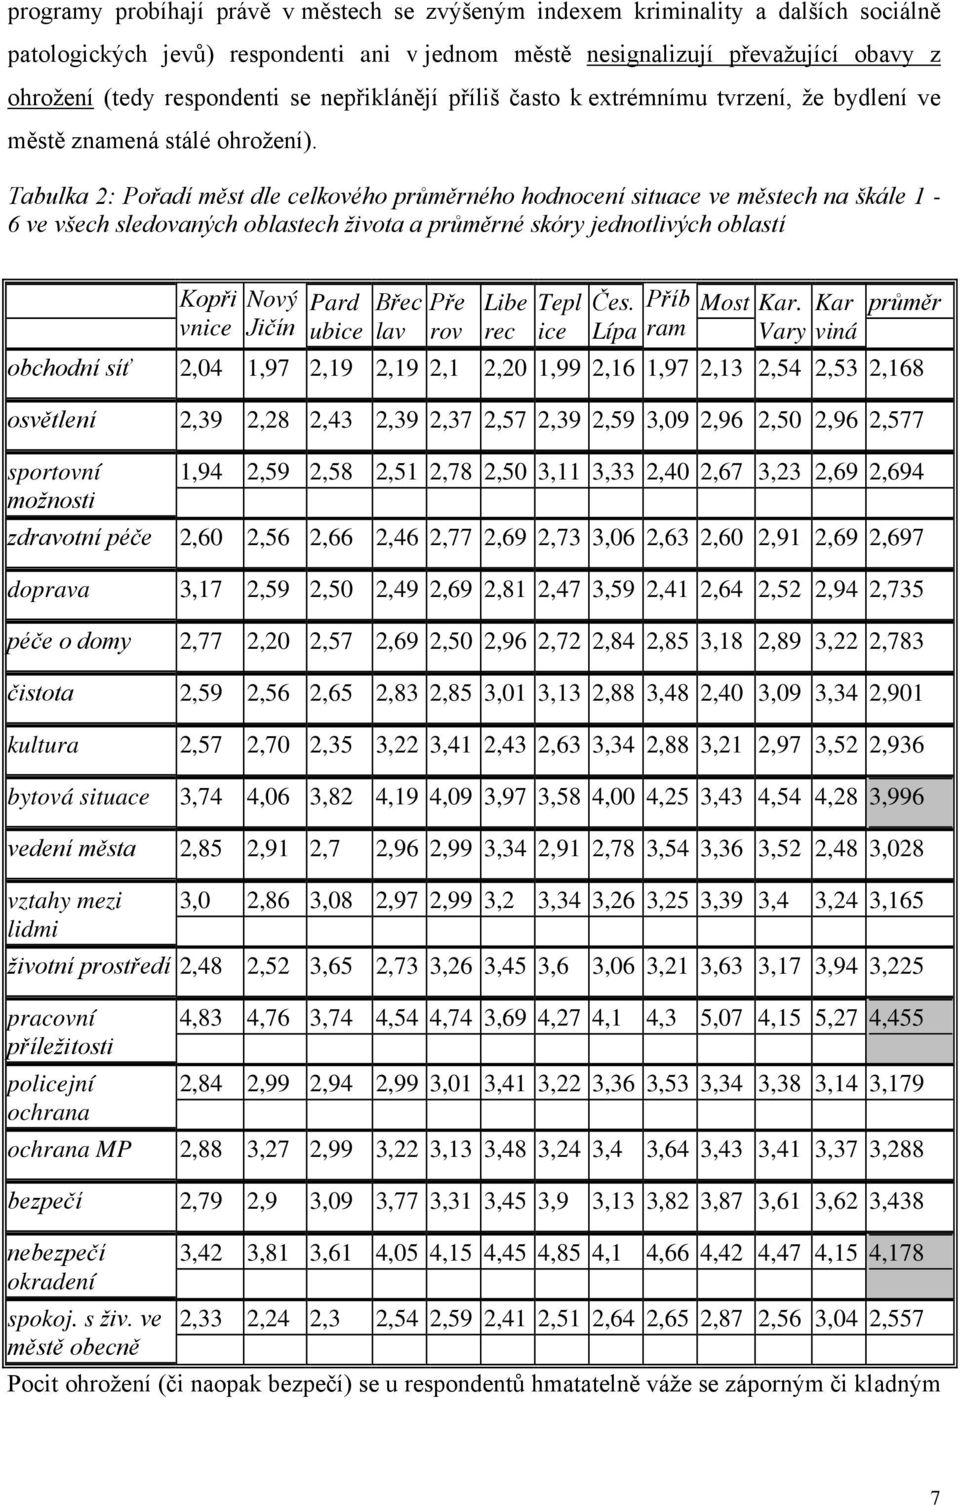 Tabulka 2: Pořadí měst dle celkového průměrného hodnocení situace ve městech na škále 1-6 ve všech sledovaných oblastech života a průměrné skóry jednotlivých oblastí Kopři vnice Nový Jičín Pard ubice